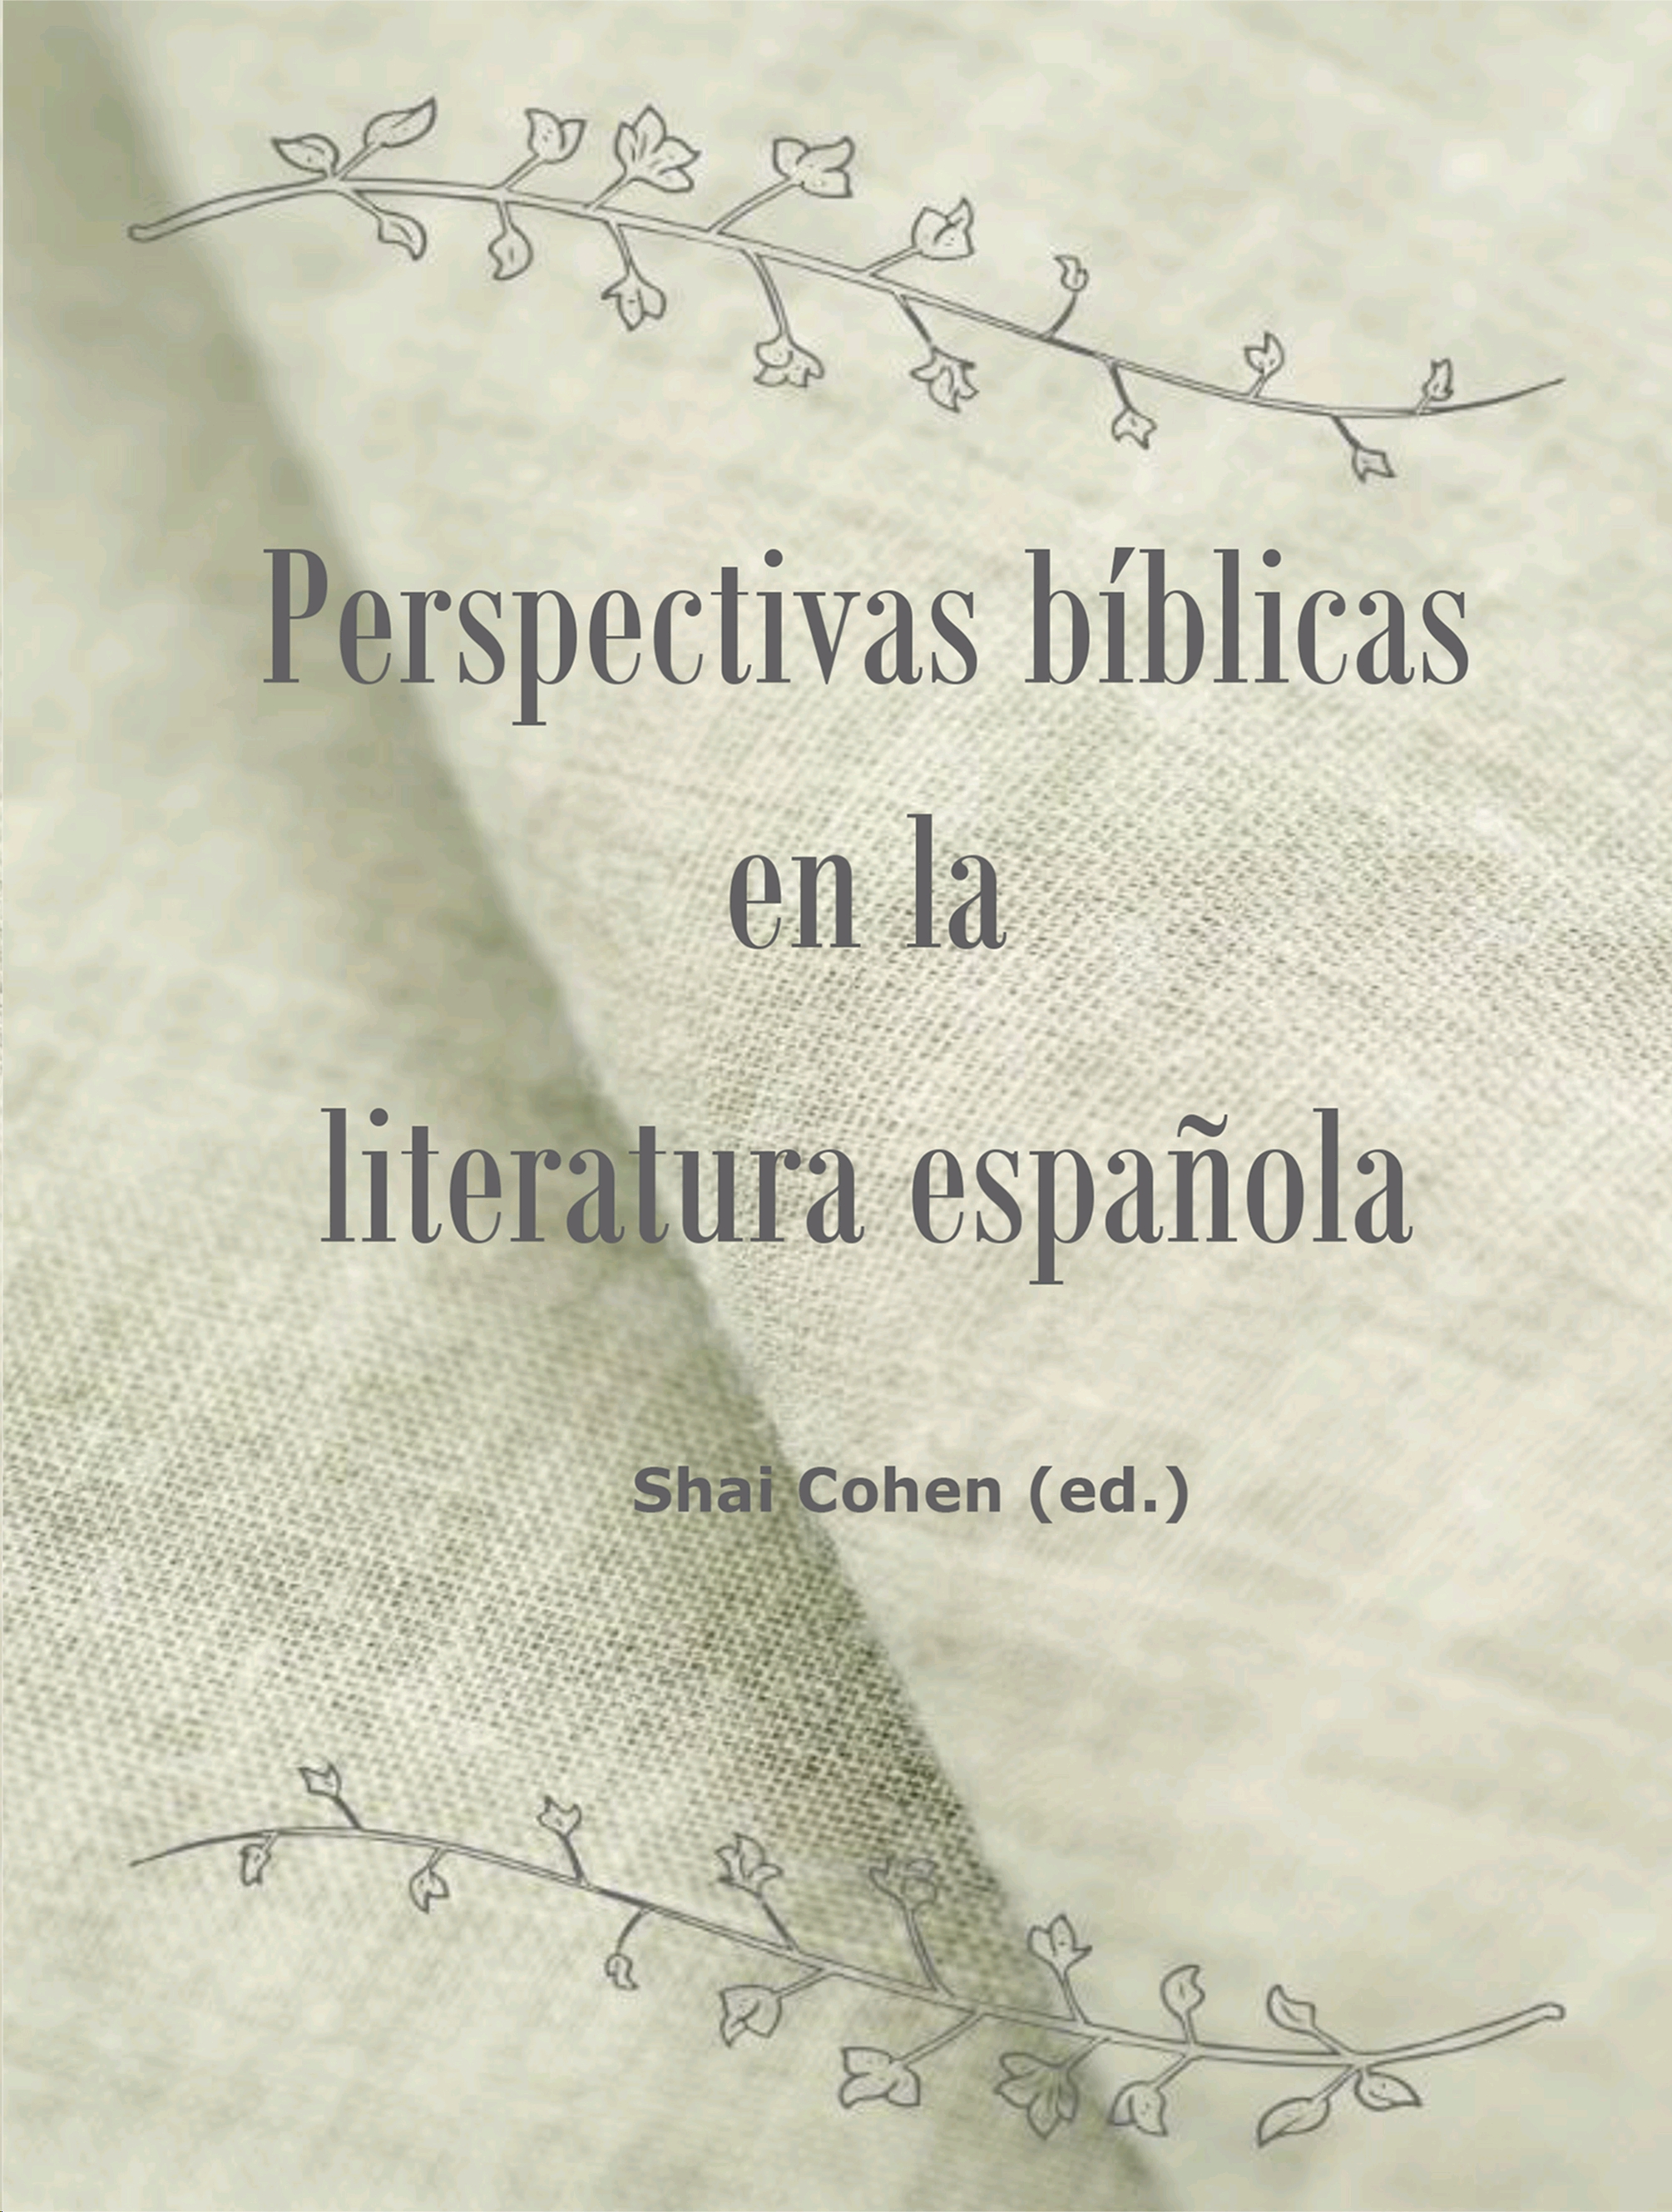 Imagen de portada del libro Perspectivas bíblicas en la literatura española